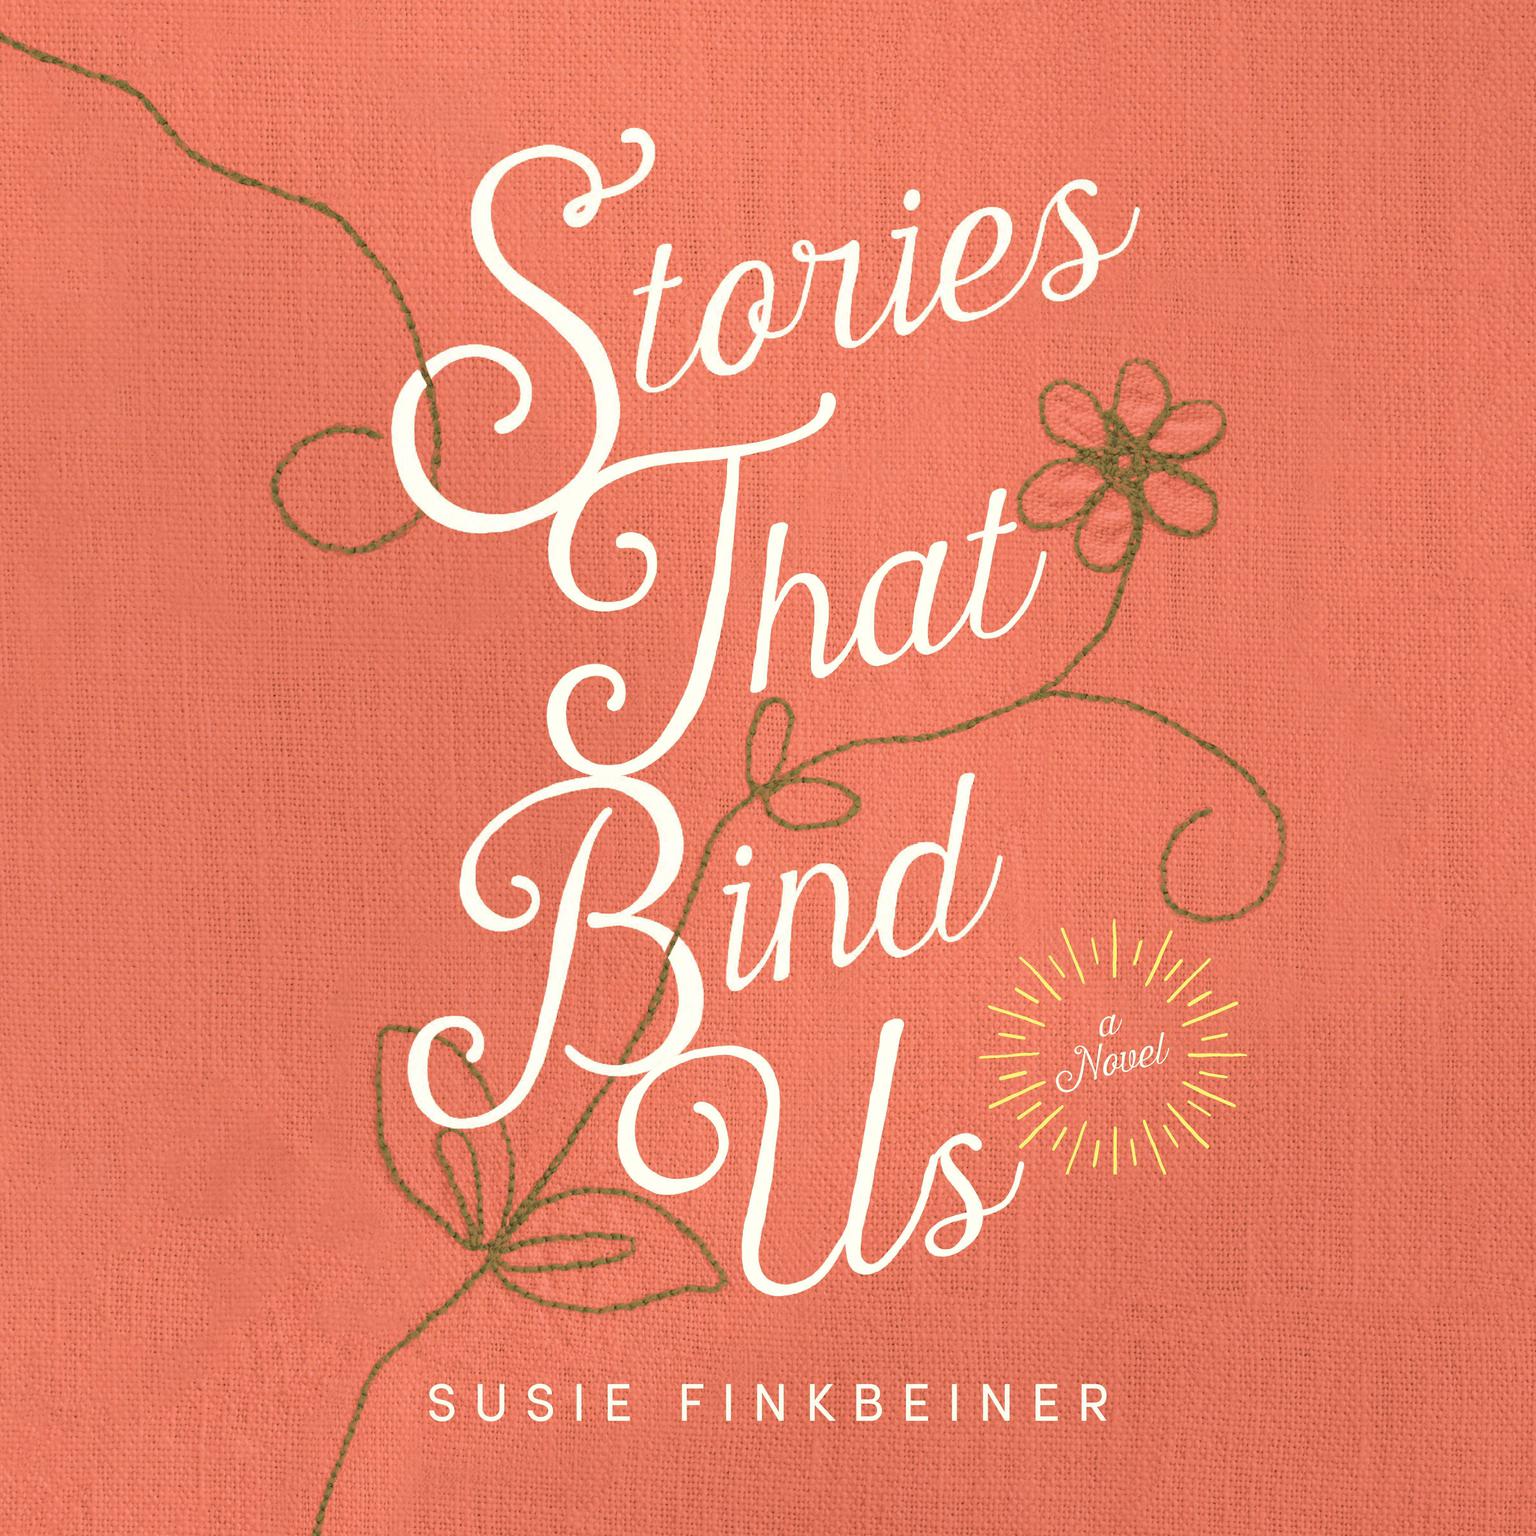 Stories that Bind Us Audiobook, by Susie Finkbeiner